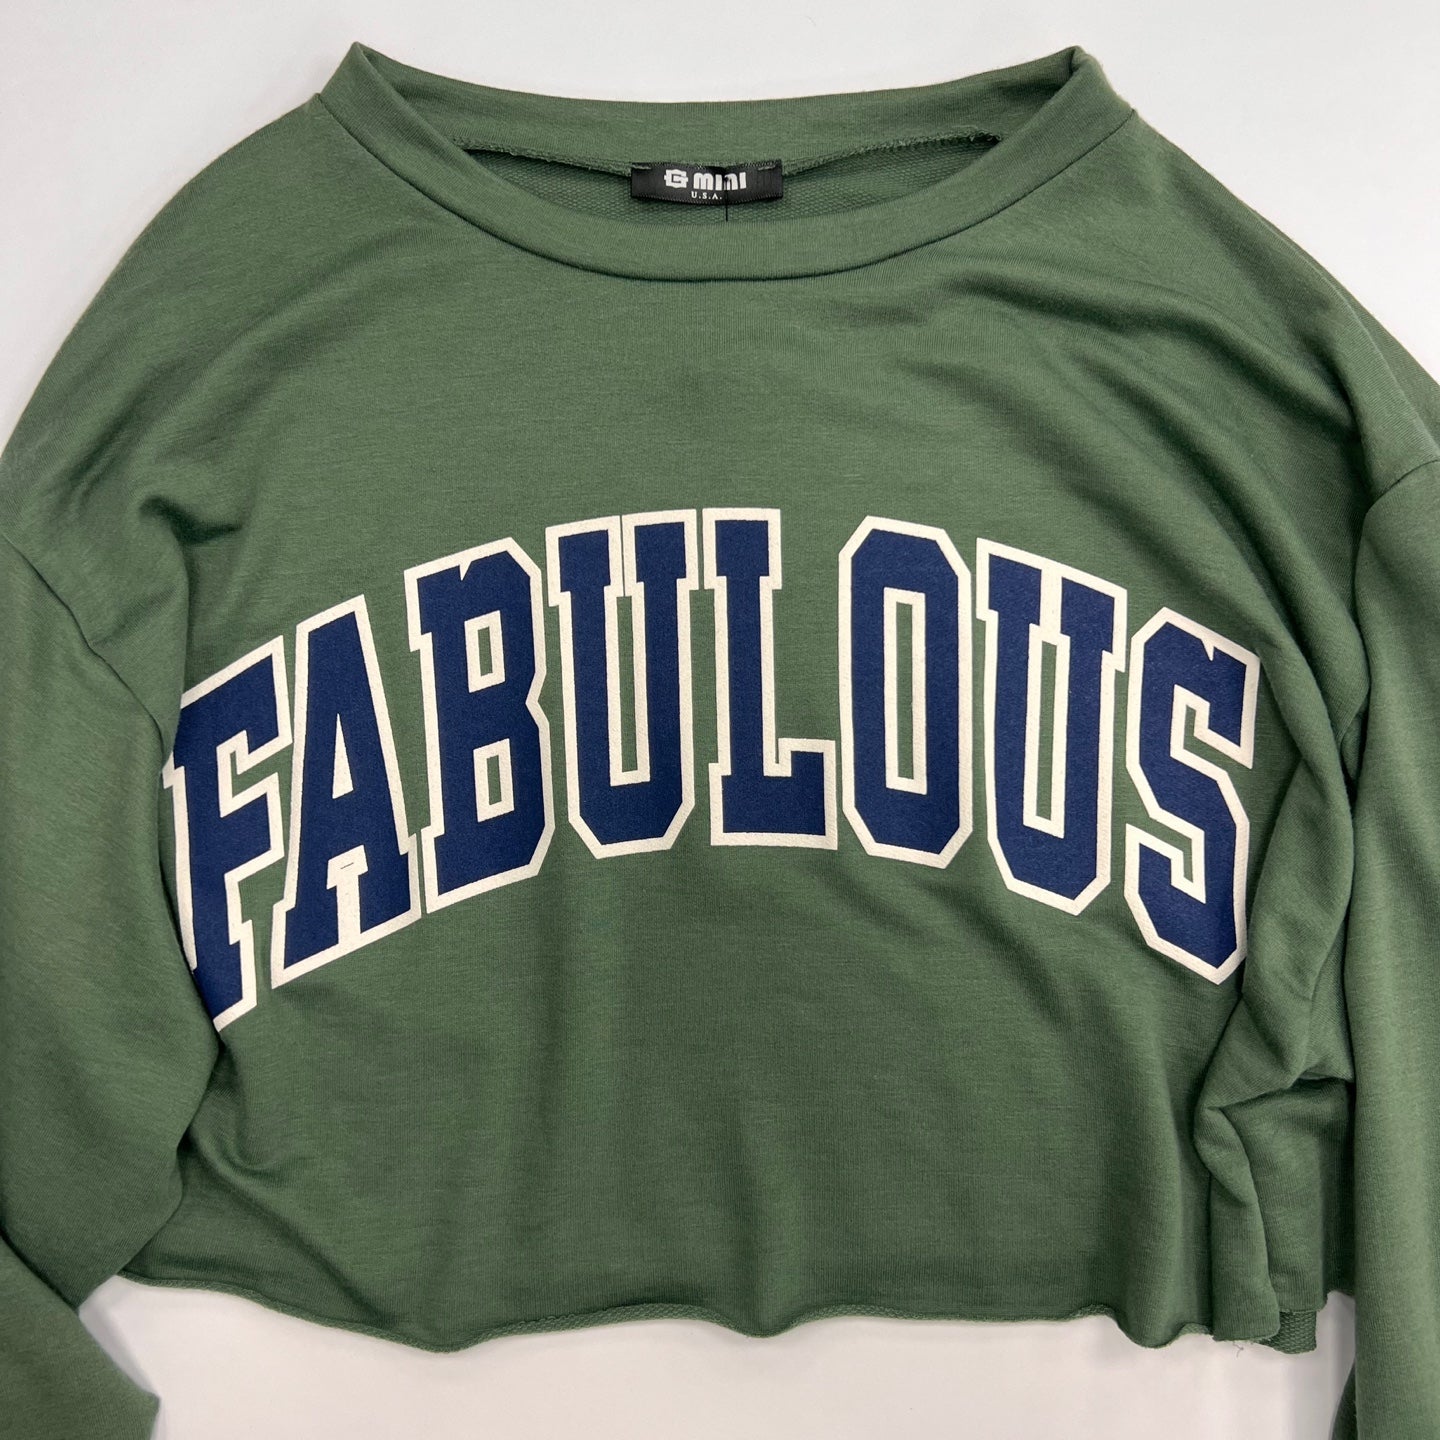 Women's Fabulous Crop Top T-Shirt